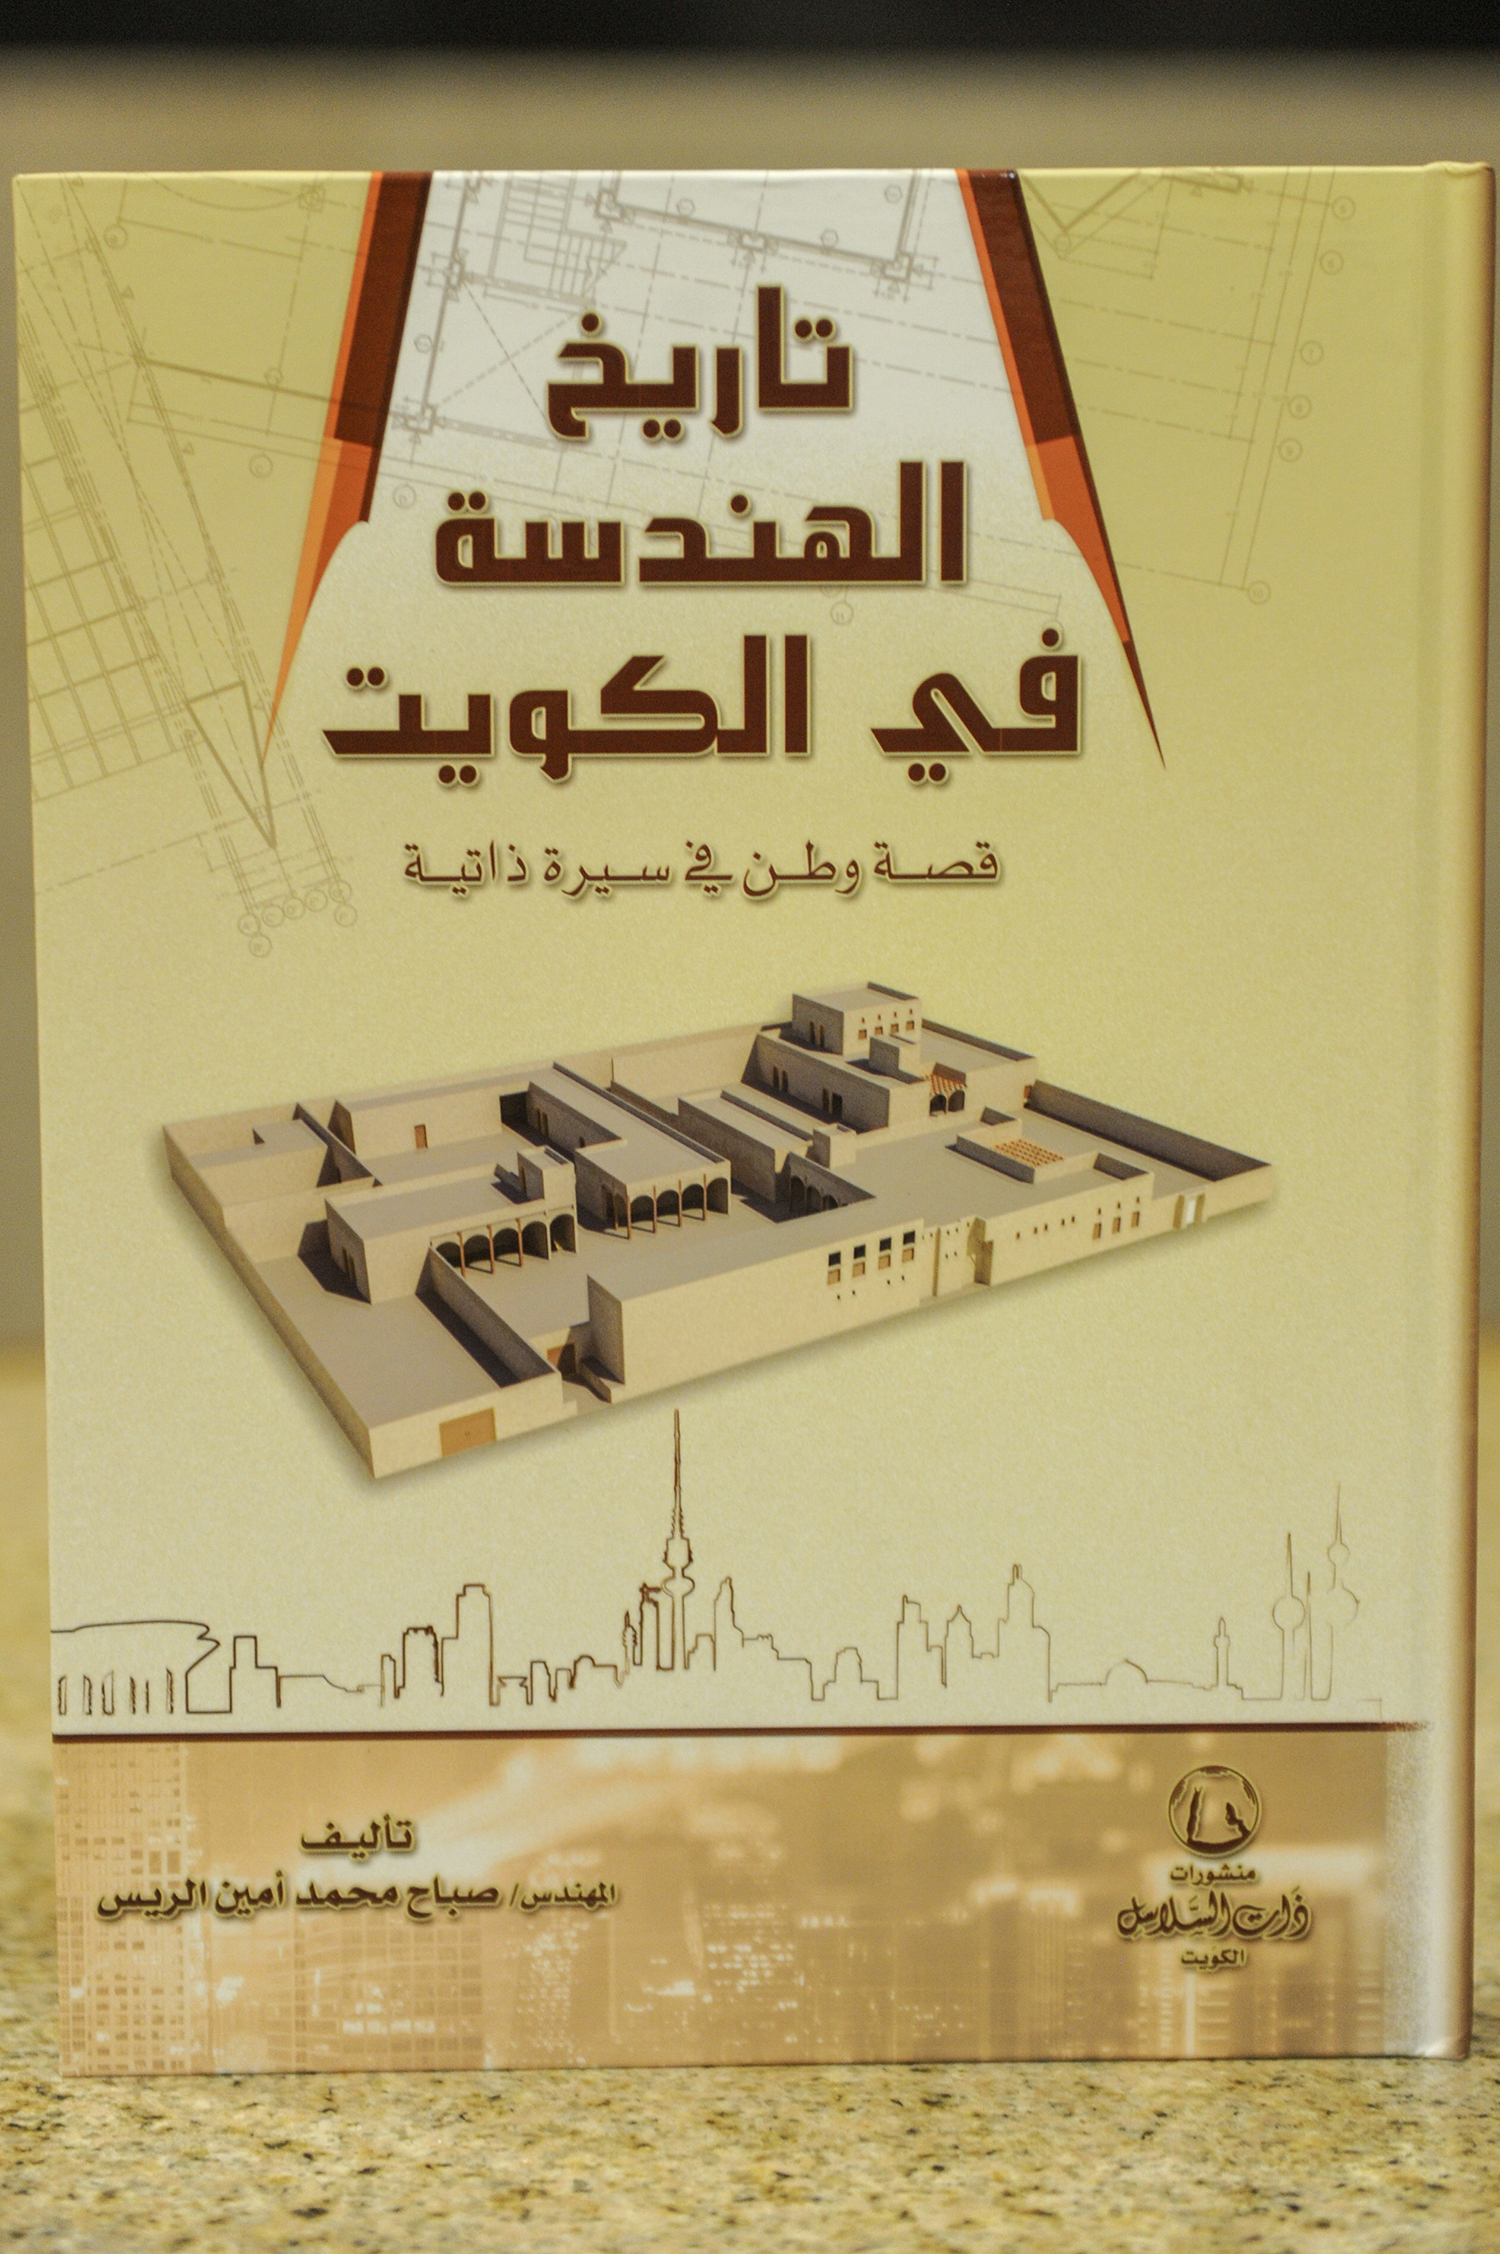 كونا مكتبة الوطنية تحتفي بكتاب تاريخ الهندسة في الكويت للمهندس الريس الثقافة والفنون والآداب 10 04 2018